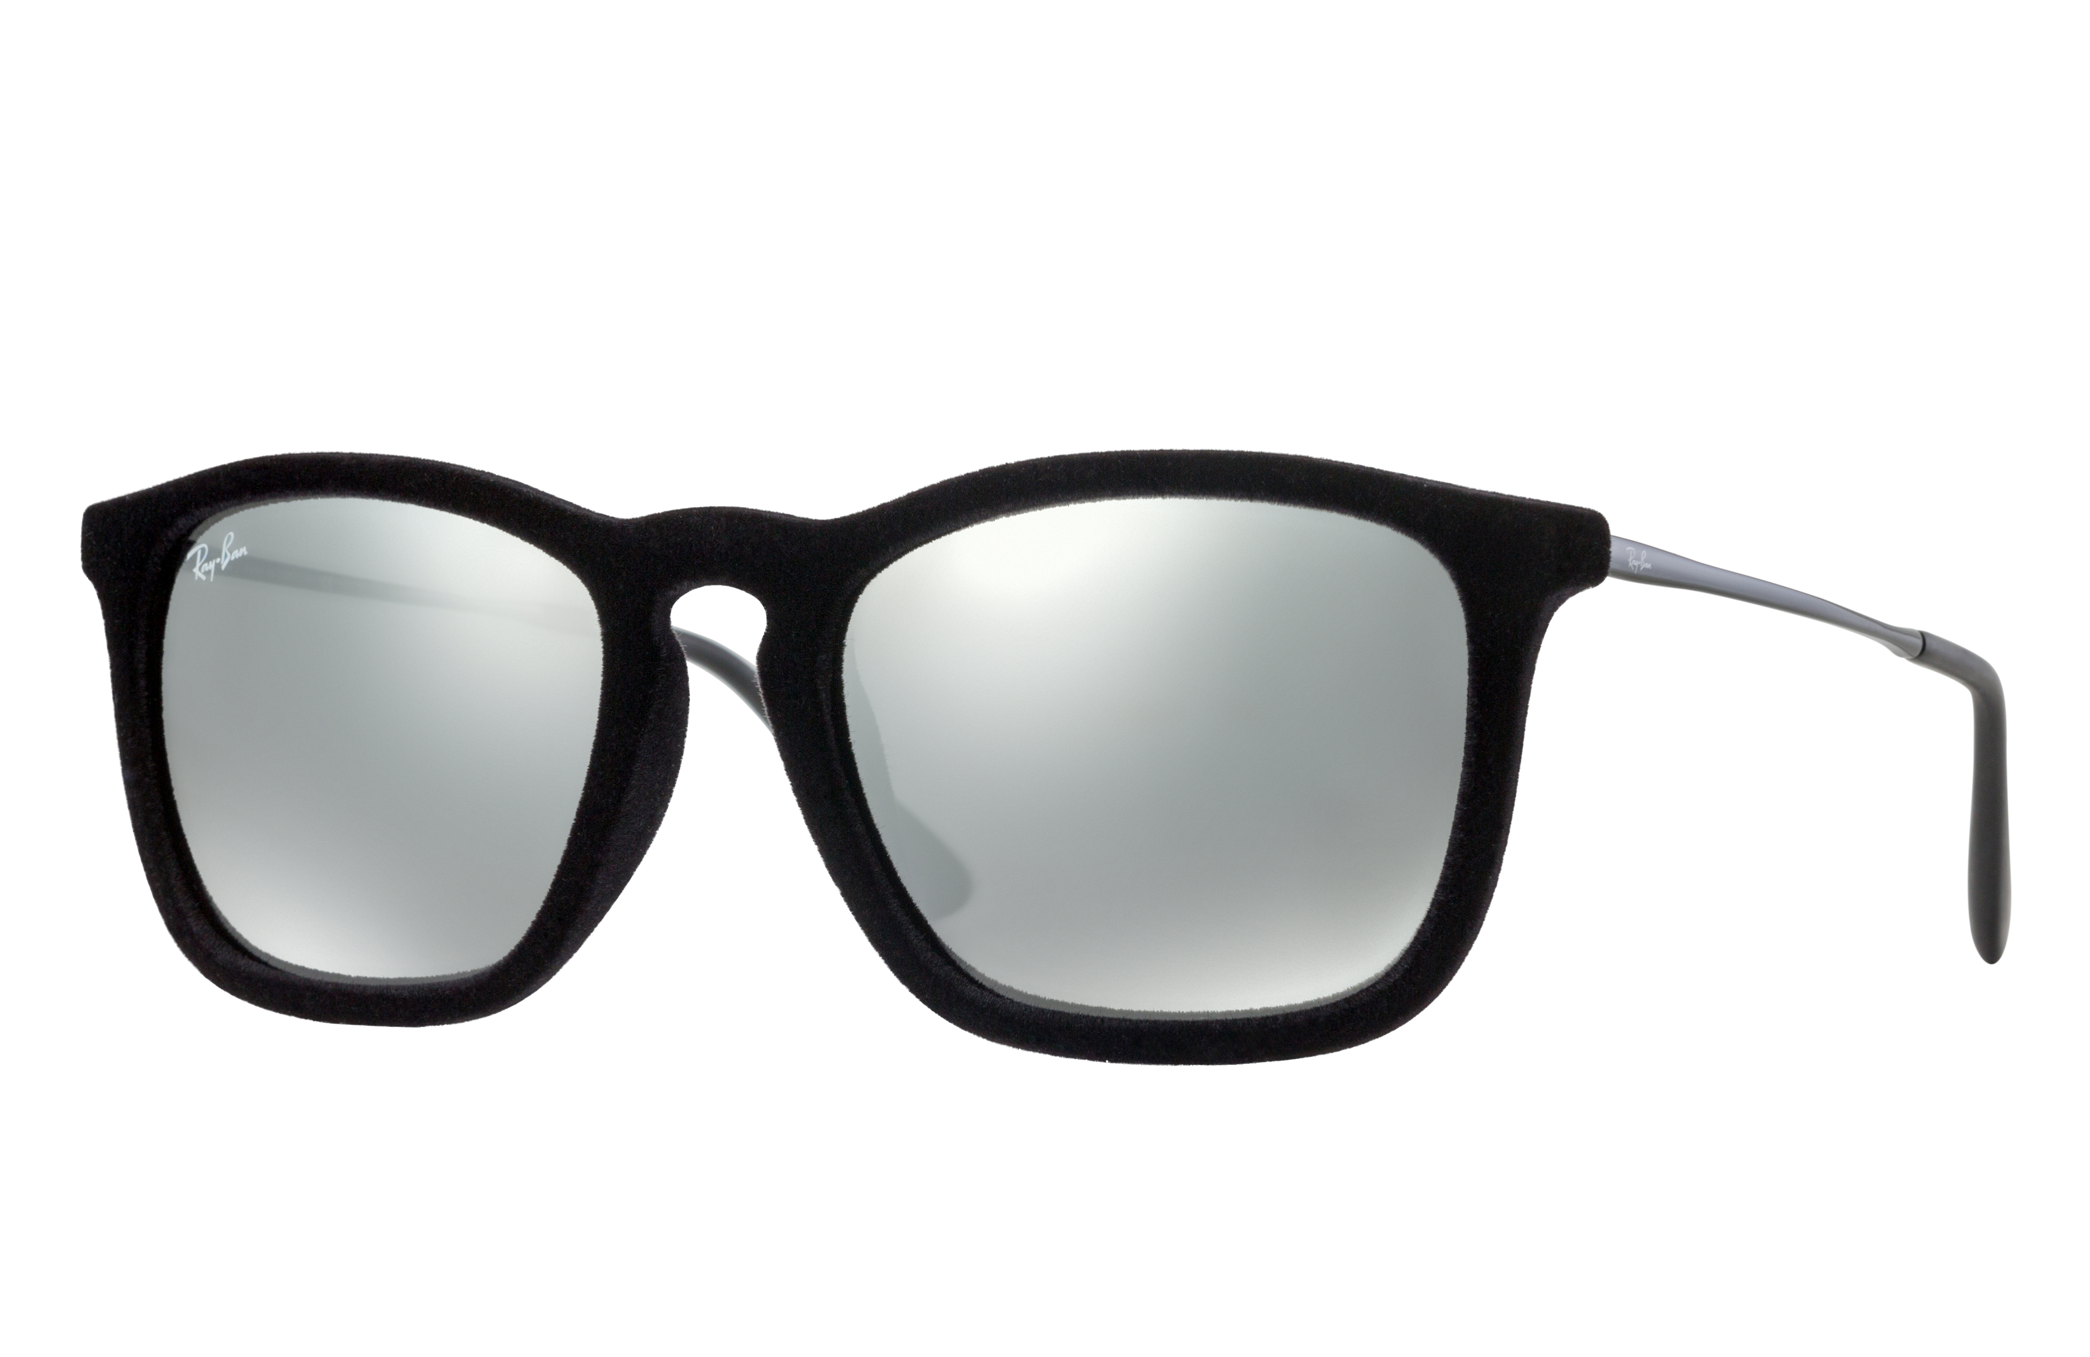 Chris Velvet Sunglasses in Black Velvet and Grey | Ray-Ban®